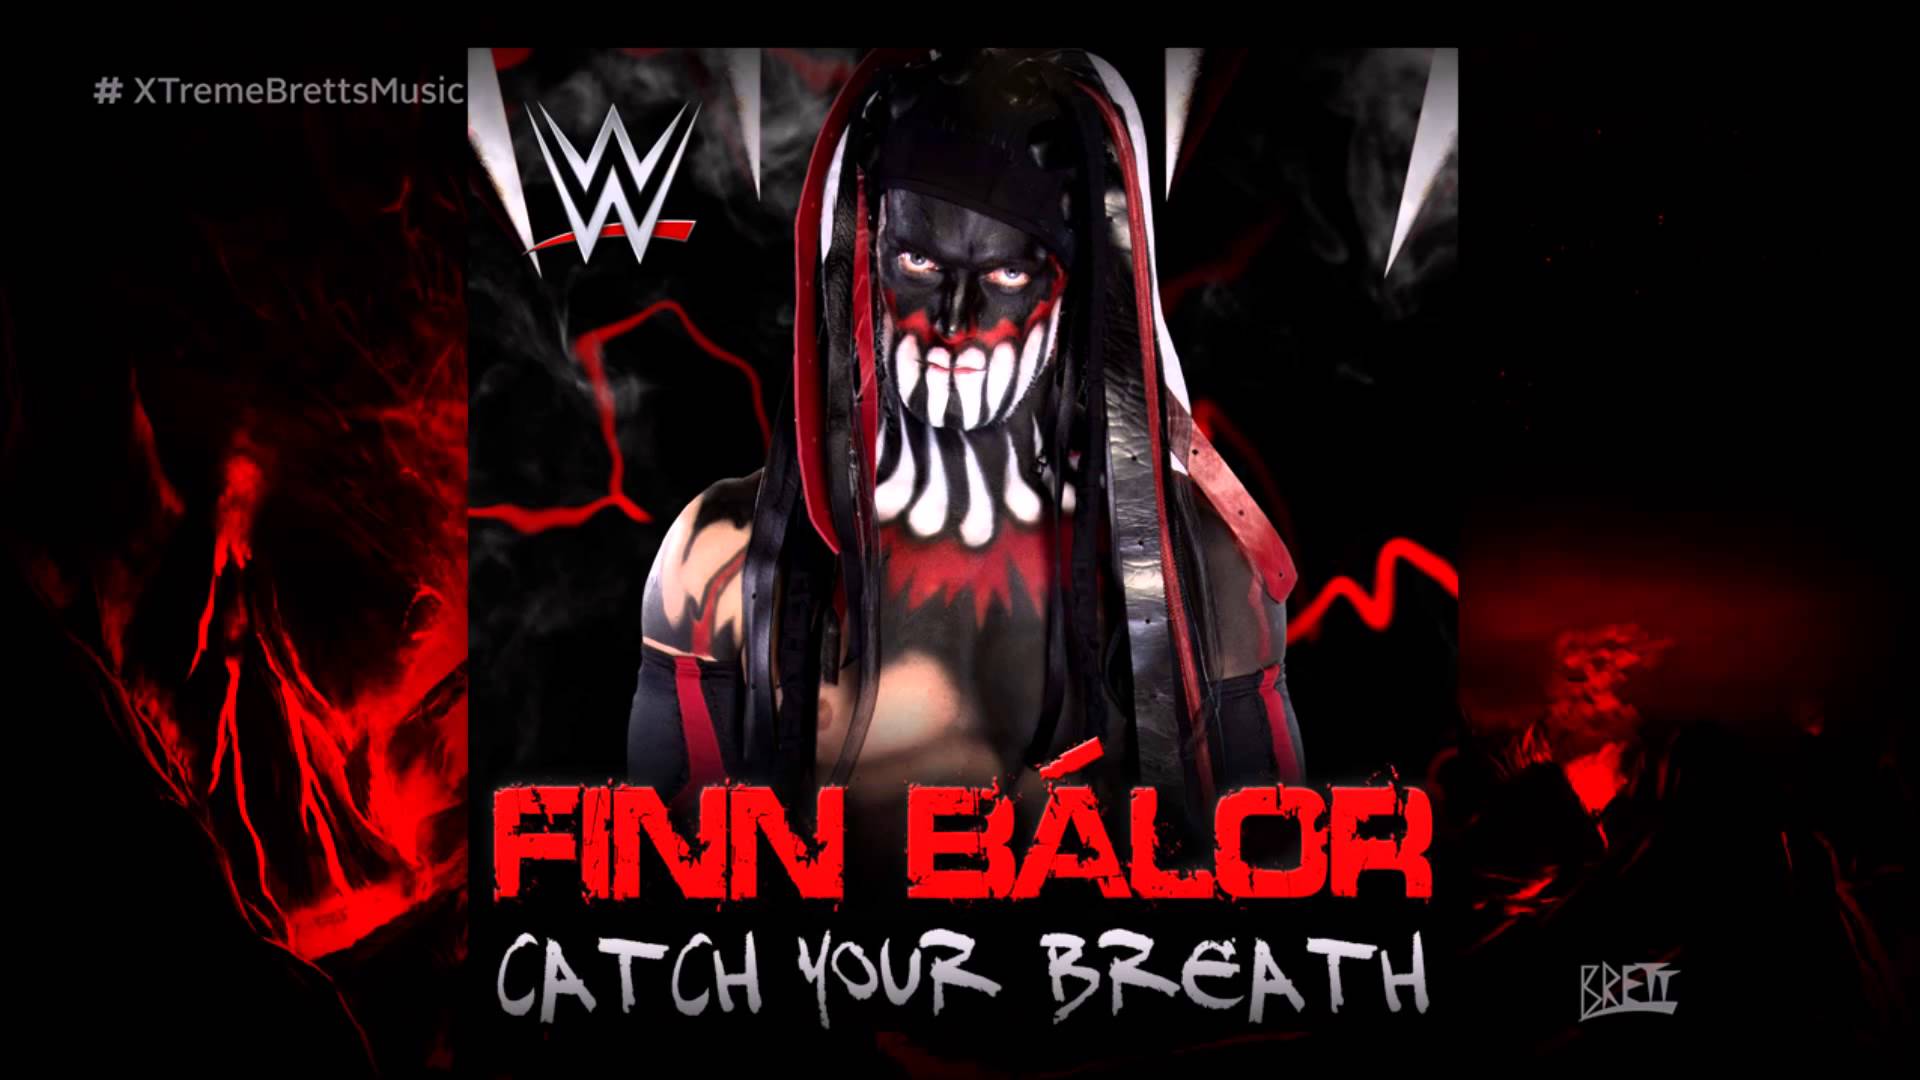 WWE NXT: "Catch Your Breath" [iTunes Release] by CFO$ ► Finn